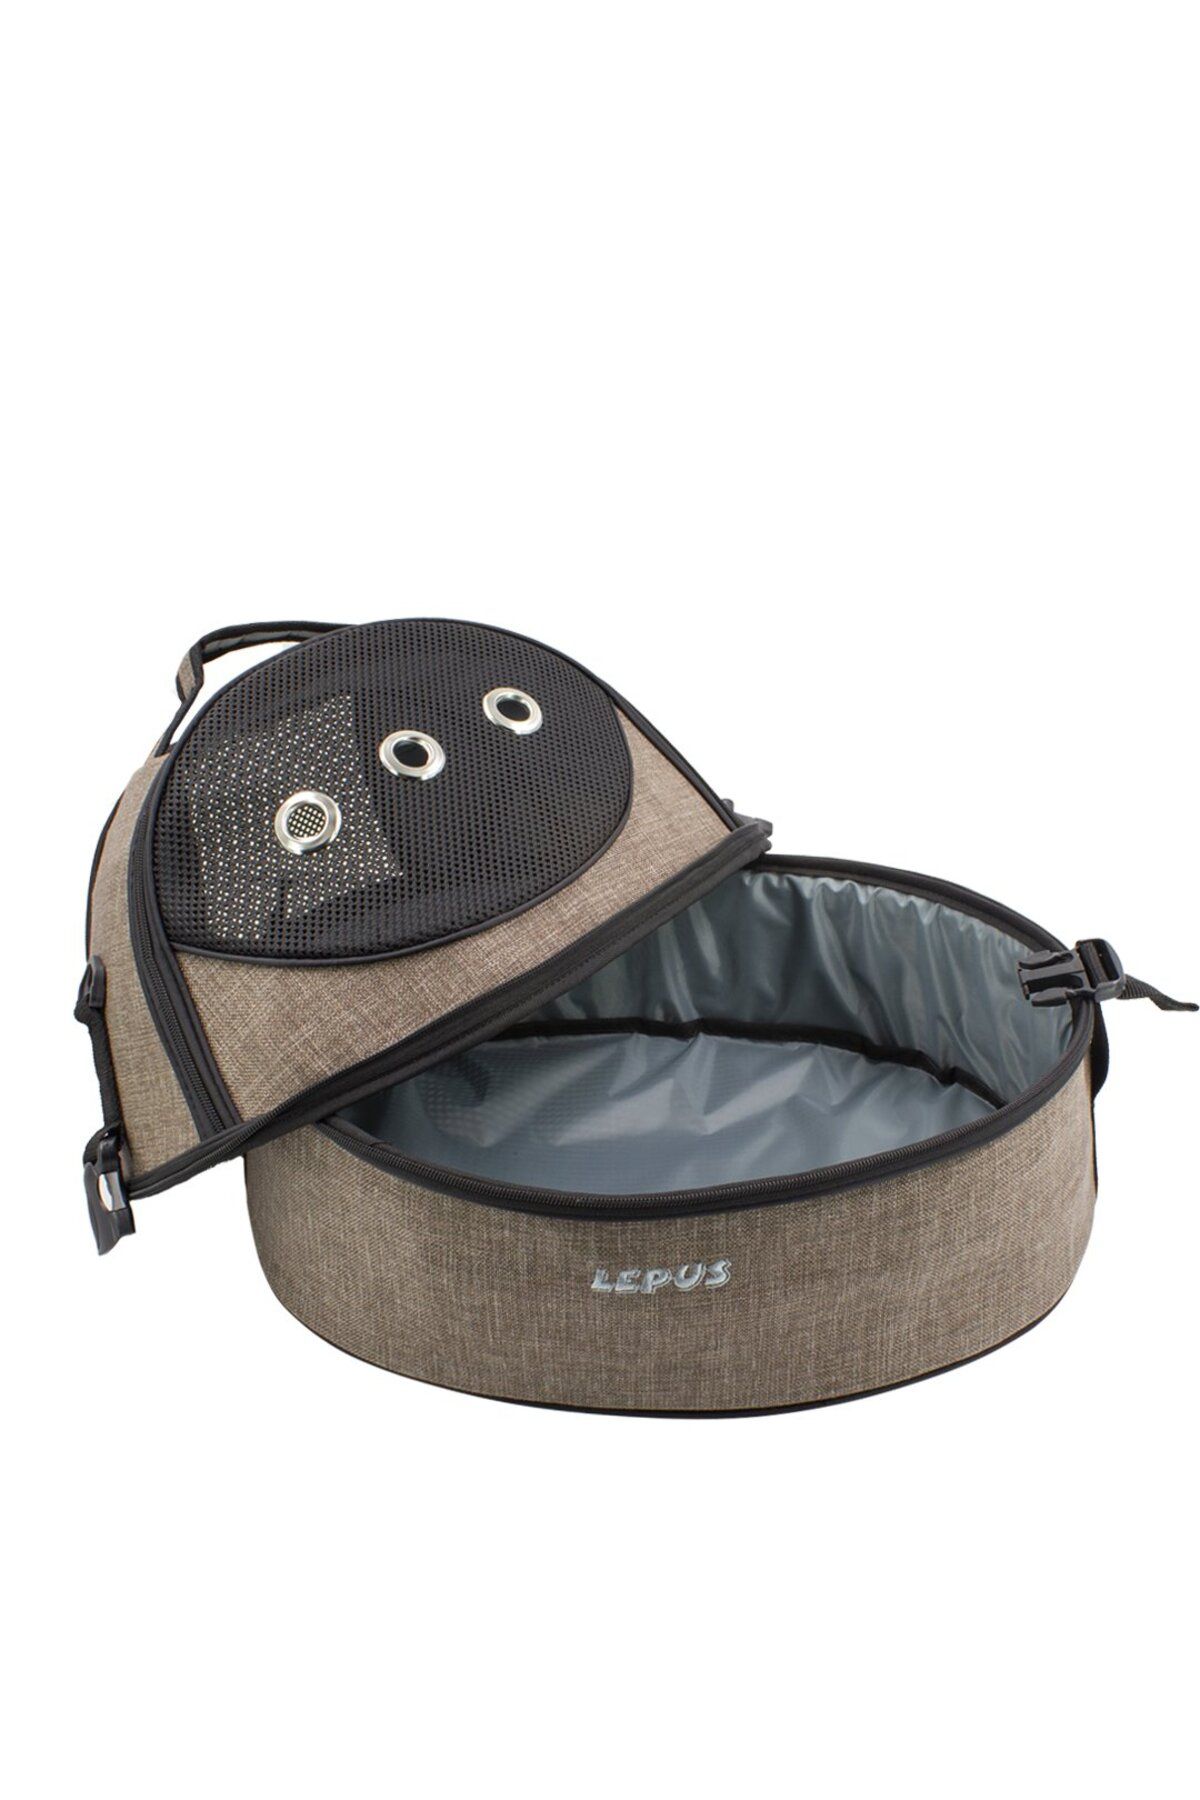 Lepus Ufo Bag, kedi ve köpek taşıma çantası